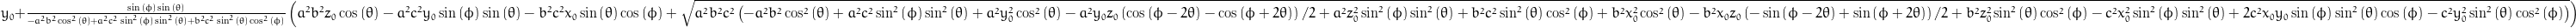 y_{0} + \frac{\sin{\left (\phi \right )} \sin{\left (\theta \right )}}{- a^{2} b^{2} \cos^{2}{\left (\theta \right )} + a^{2} c^{2} \sin^{2}{\left (\phi \right )} \sin^{2}{\left (\theta \right )} + b^{2} c^{2} \sin^{2}{\left (\theta \right )} \cos^{2}{\left (\phi \right )}} \left(a^{2} b^{2} z_{0} \cos{\left (\theta \right )} - a^{2} c^{2} y_{0} \sin{\left (\phi \right )} \sin{\left (\theta \right )} - b^{2} c^{2} x_{0} \sin{\left (\theta \right )} \cos{\left (\phi \right )} + \sqrt{a^{2} b^{2} c^{2} \left(- a^{2} b^{2} \cos^{2}{\left (\theta \right )} + a^{2} c^{2} \sin^{2}{\left (\phi \right )} \sin^{2}{\left (\theta \right )} + a^{2} y_{0}^{2} \cos^{2}{\left (\theta \right )} - \frac{y_{0} z_{0}}{2} a^{2} \left(\cos{\left (\phi - 2 \theta \right )} - \cos{\left (\phi + 2 \theta \right )}\right) + a^{2} z_{0}^{2} \sin^{2}{\left (\phi \right )} \sin^{2}{\left (\theta \right )} + b^{2} c^{2} \sin^{2}{\left (\theta \right )} \cos^{2}{\left (\phi \right )} + b^{2} x_{0}^{2} \cos^{2}{\left (\theta \right )} - \frac{x_{0} z_{0}}{2} b^{2} \left(- \sin{\left (\phi - 2 \theta \right )} + \sin{\left (\phi + 2 \theta \right )}\right) + b^{2} z_{0}^{2} \sin^{2}{\left (\theta \right )} \cos^{2}{\left (\phi \right )} - c^{2} x_{0}^{2} \sin^{2}{\left (\phi \right )} \sin^{2}{\left (\theta \right )} + 2 c^{2} x_{0} y_{0} \sin{\left (\phi \right )} \sin^{2}{\left (\theta \right )} \cos{\left (\phi \right )} - c^{2} y_{0}^{2} \sin^{2}{\left (\theta \right )} \cos^{2}{\left (\phi \right )}\right)}\right)